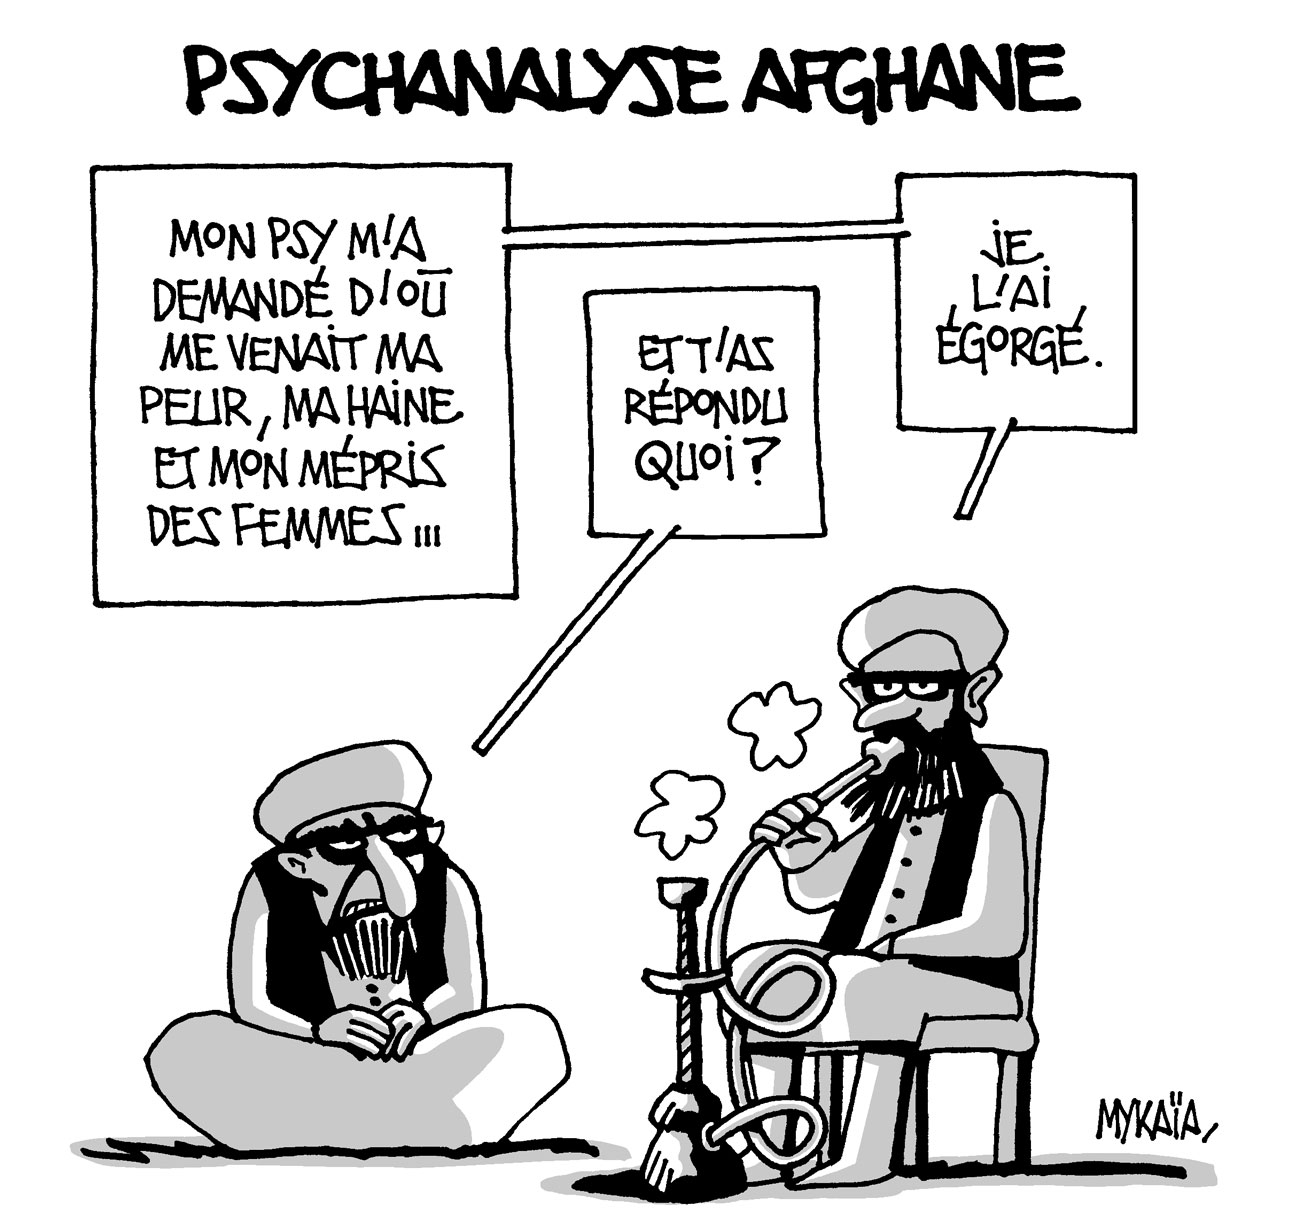 Psychanalyse afghane